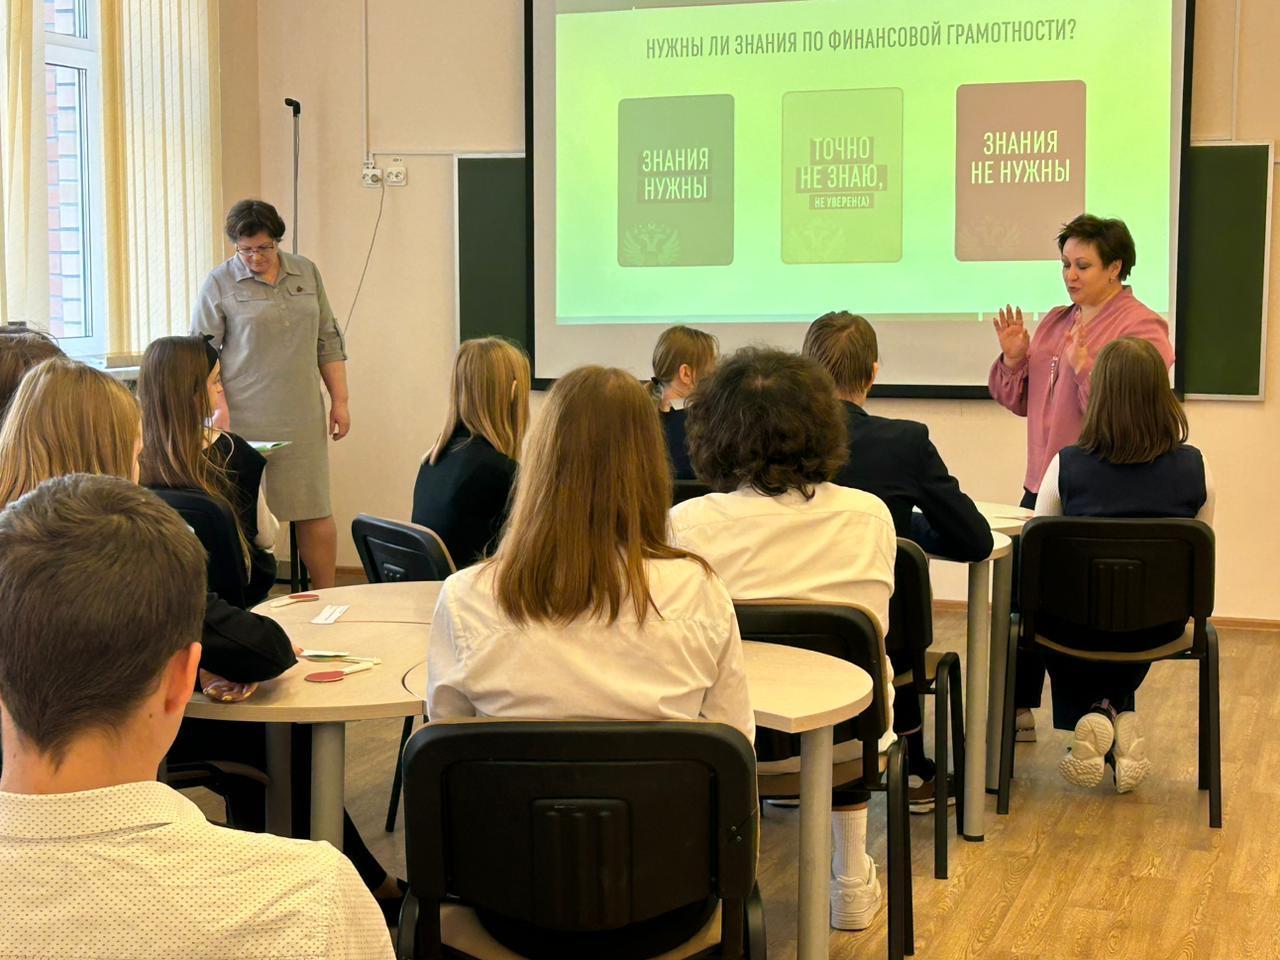 Учащимся Любучанской школы рассказали о финансовой грамотности